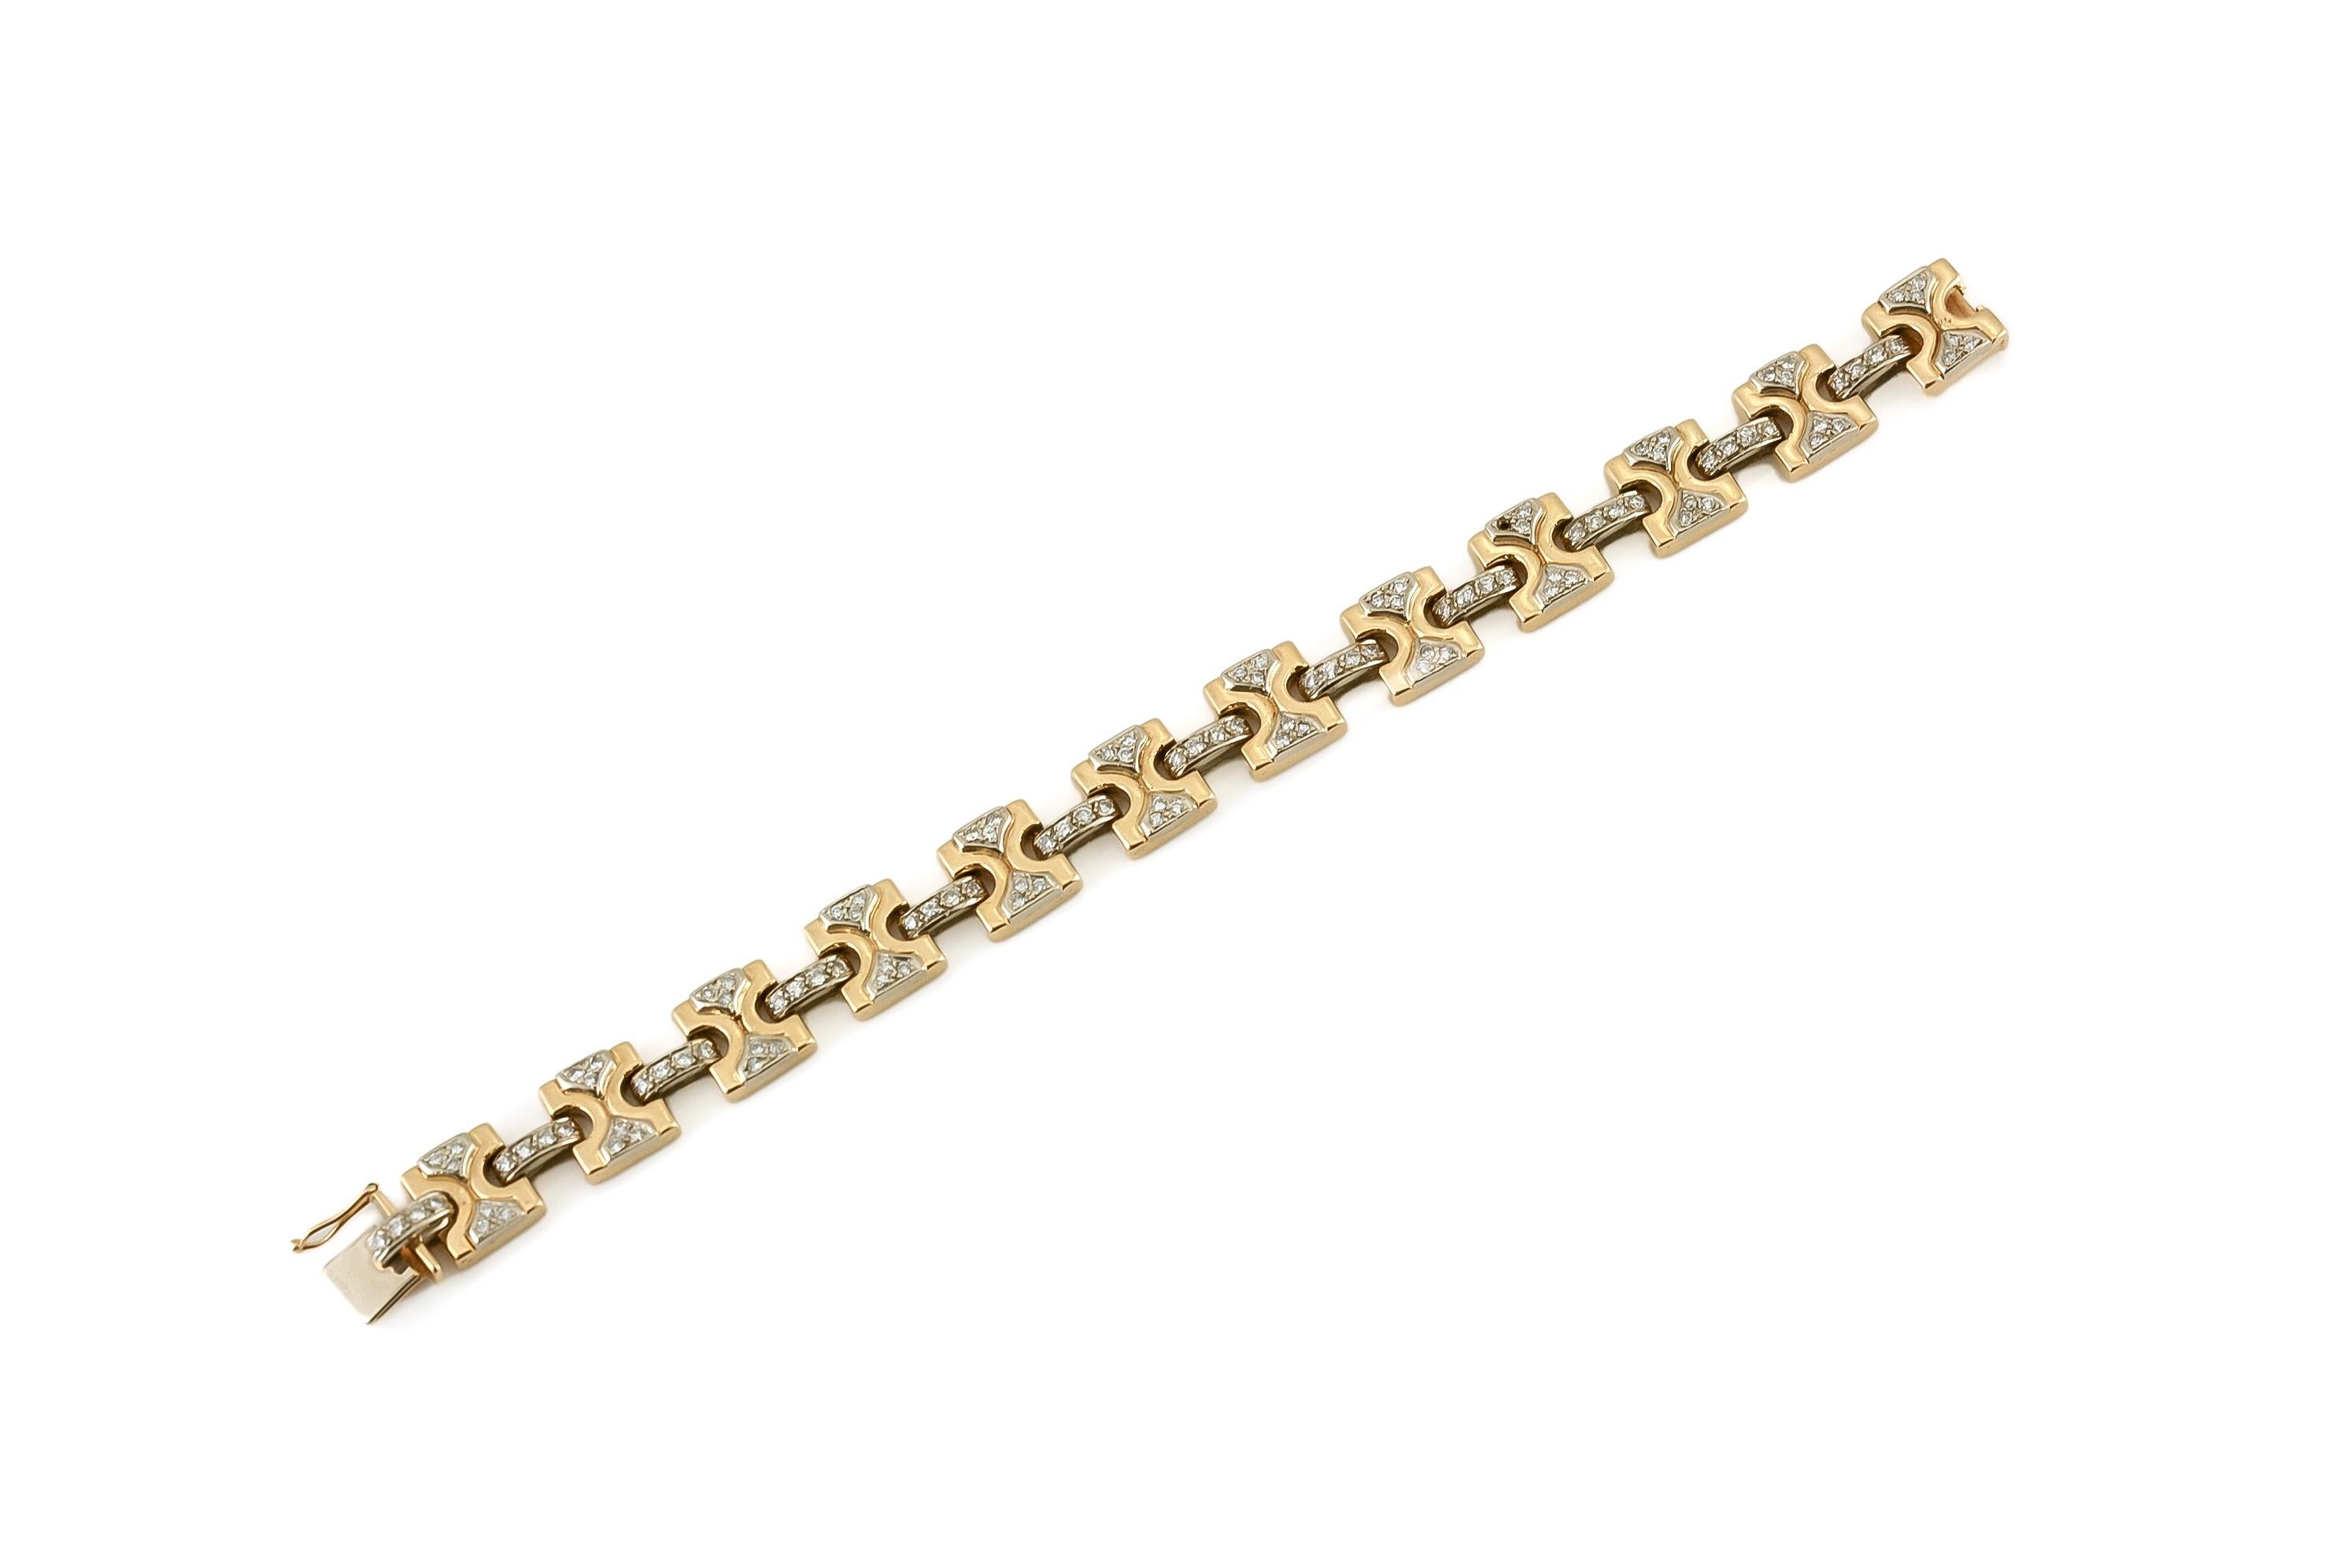 Le bracelet est finement travaillé en or jaune 18 carats avec des diamants pesant approximativement 2,80 carats au total.
Vers 1980.